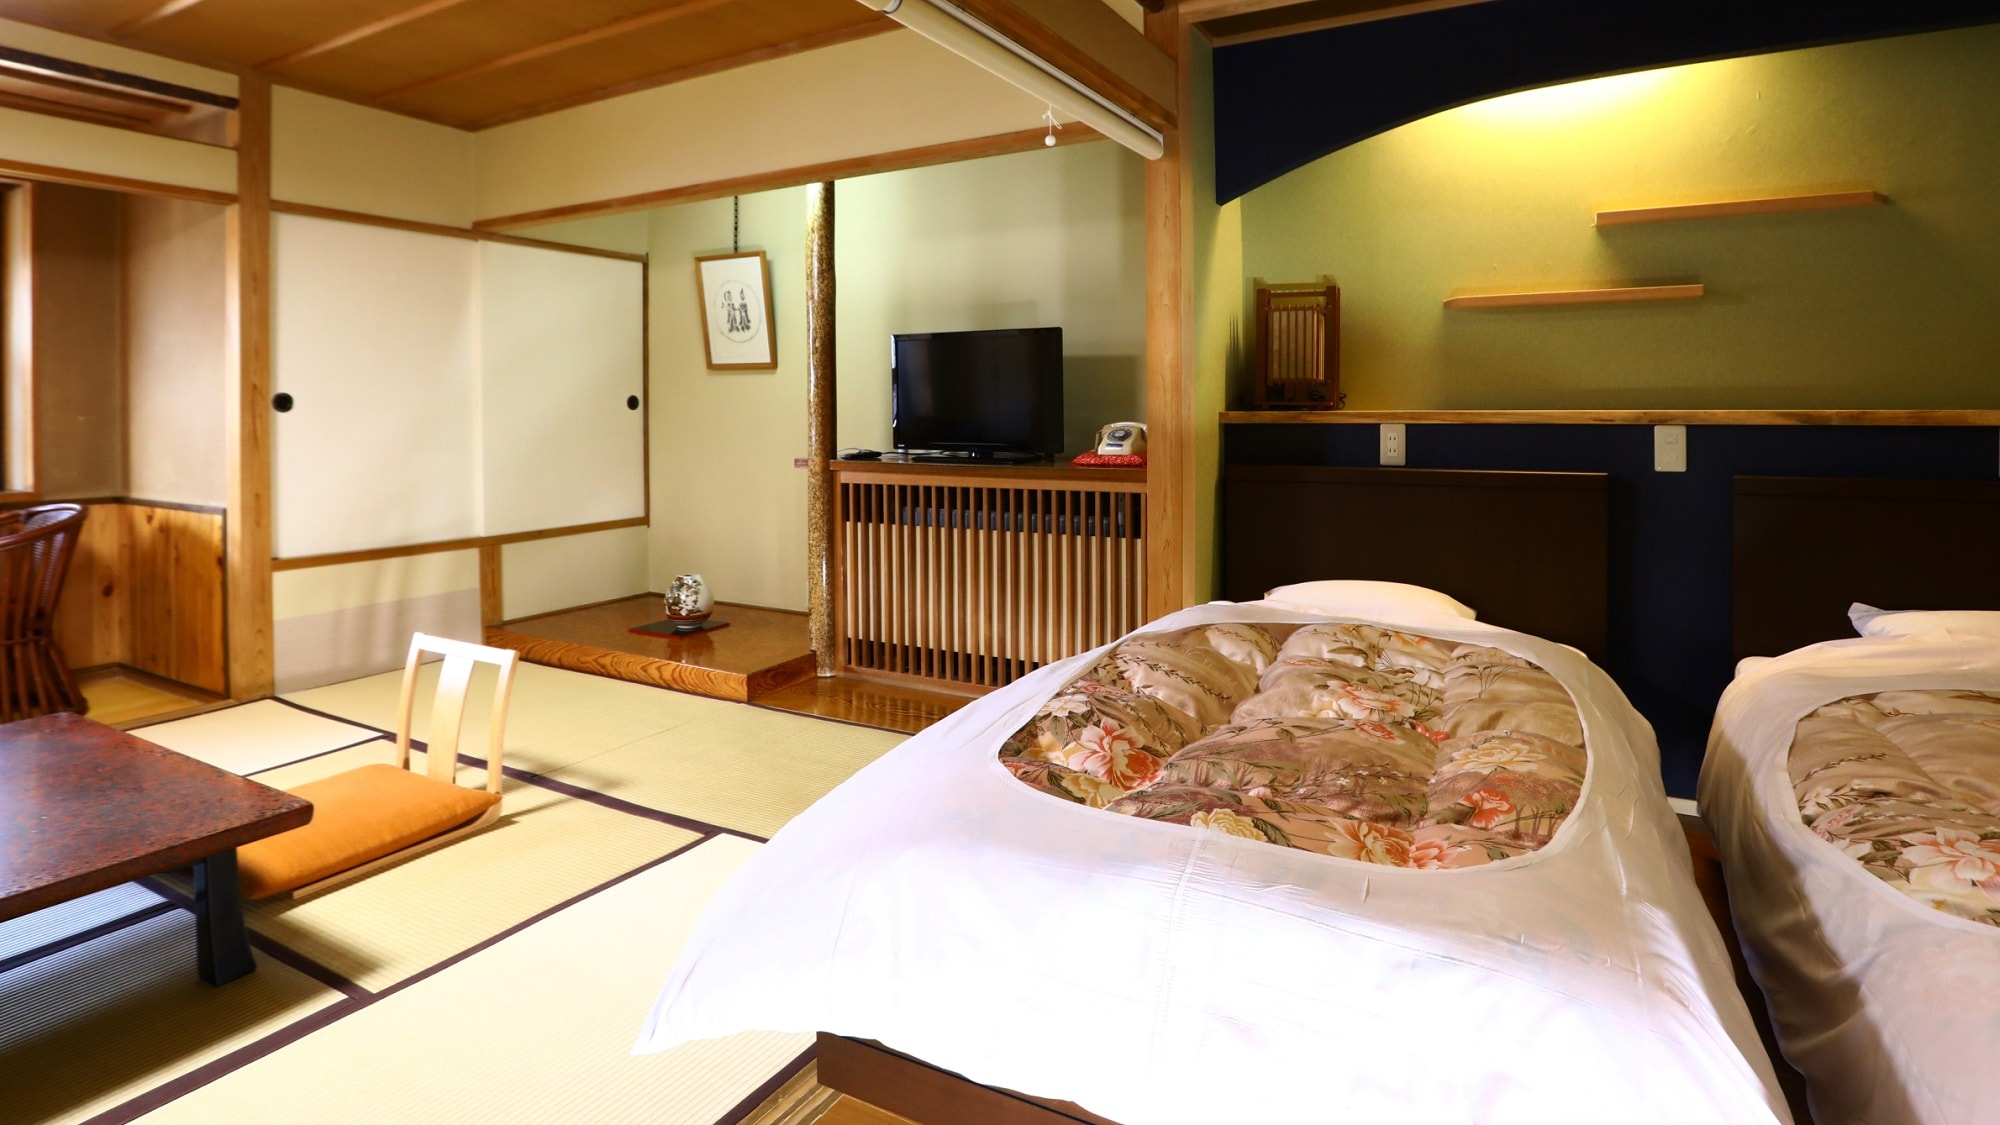 일본식 방 10 다다미 + 트윈 침대 + 넓은 인연【A 타입◇일본식 방】